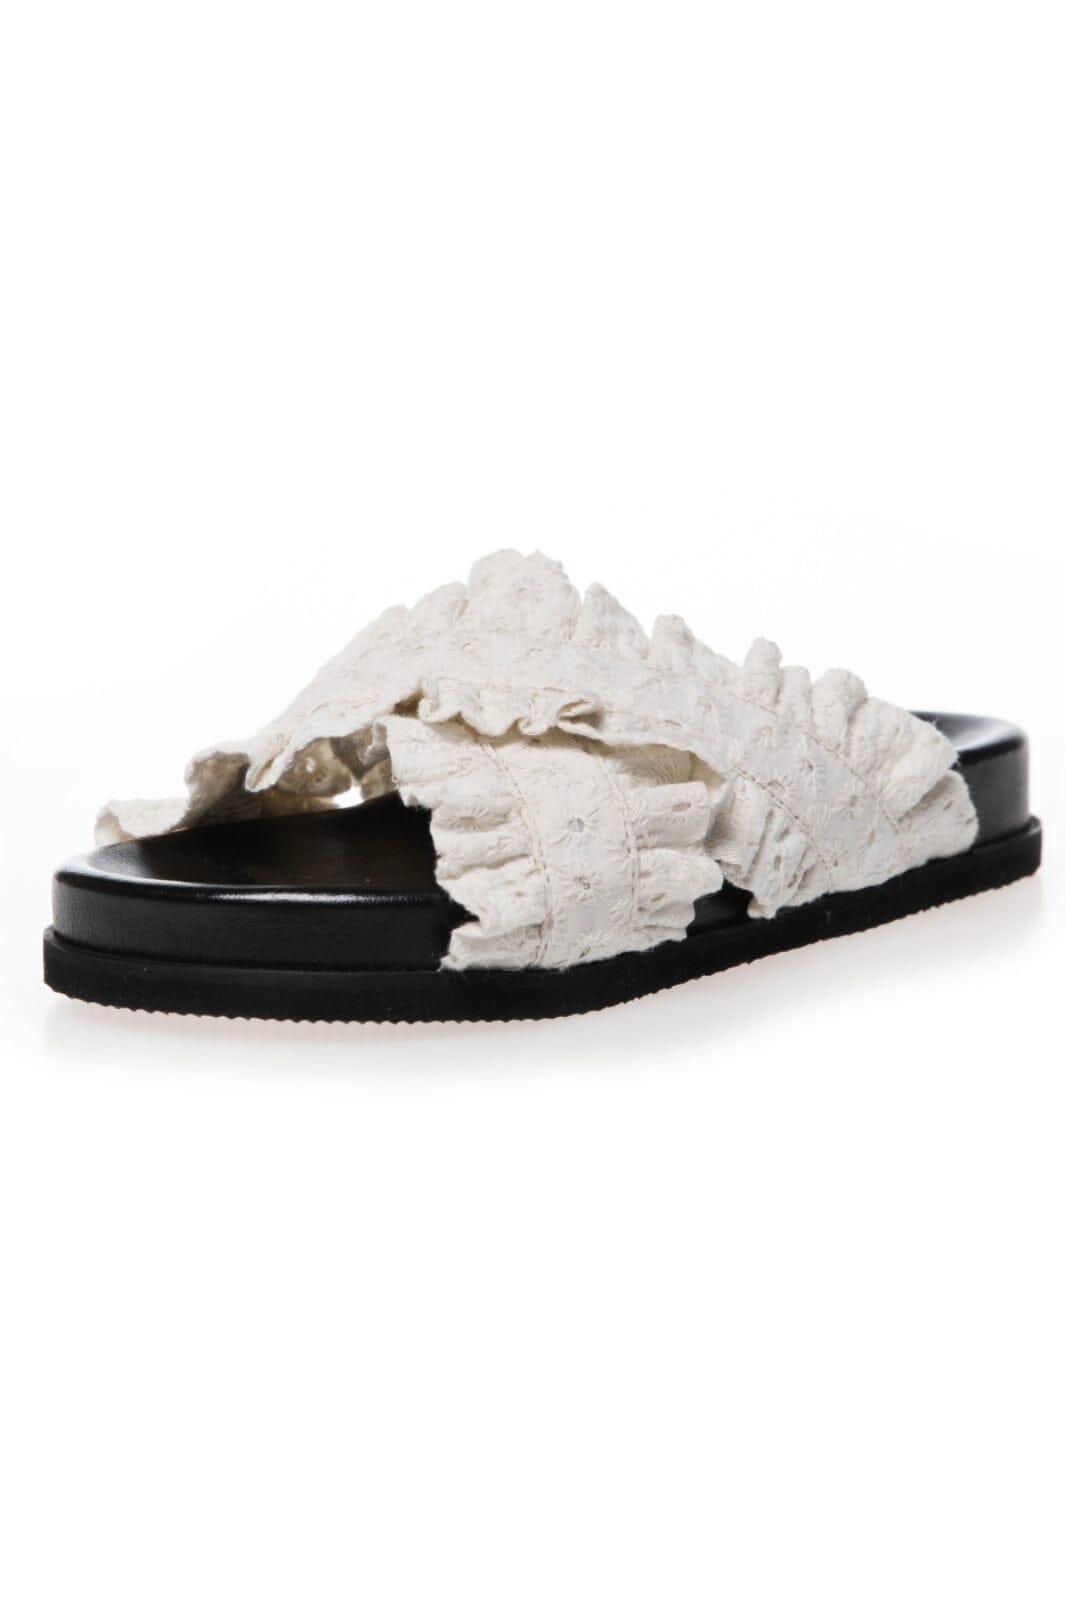 Copenhagen Shoes - Daysi - 0061 White Sandaler 